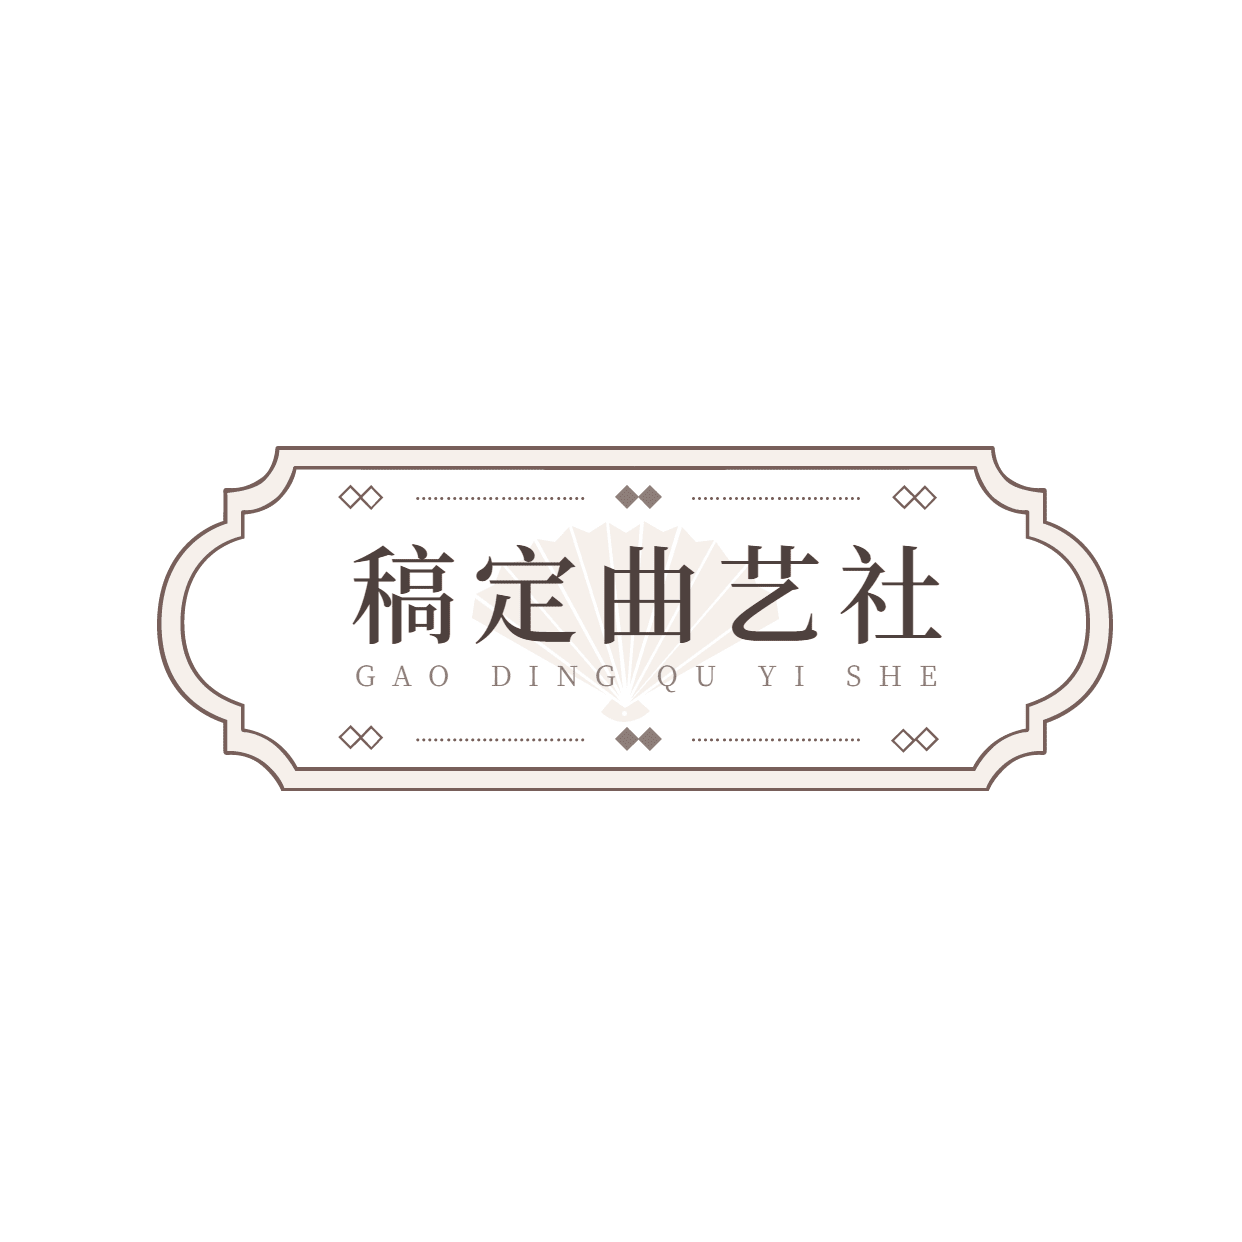 非物质文化遗产曲艺京剧logo设计预览效果